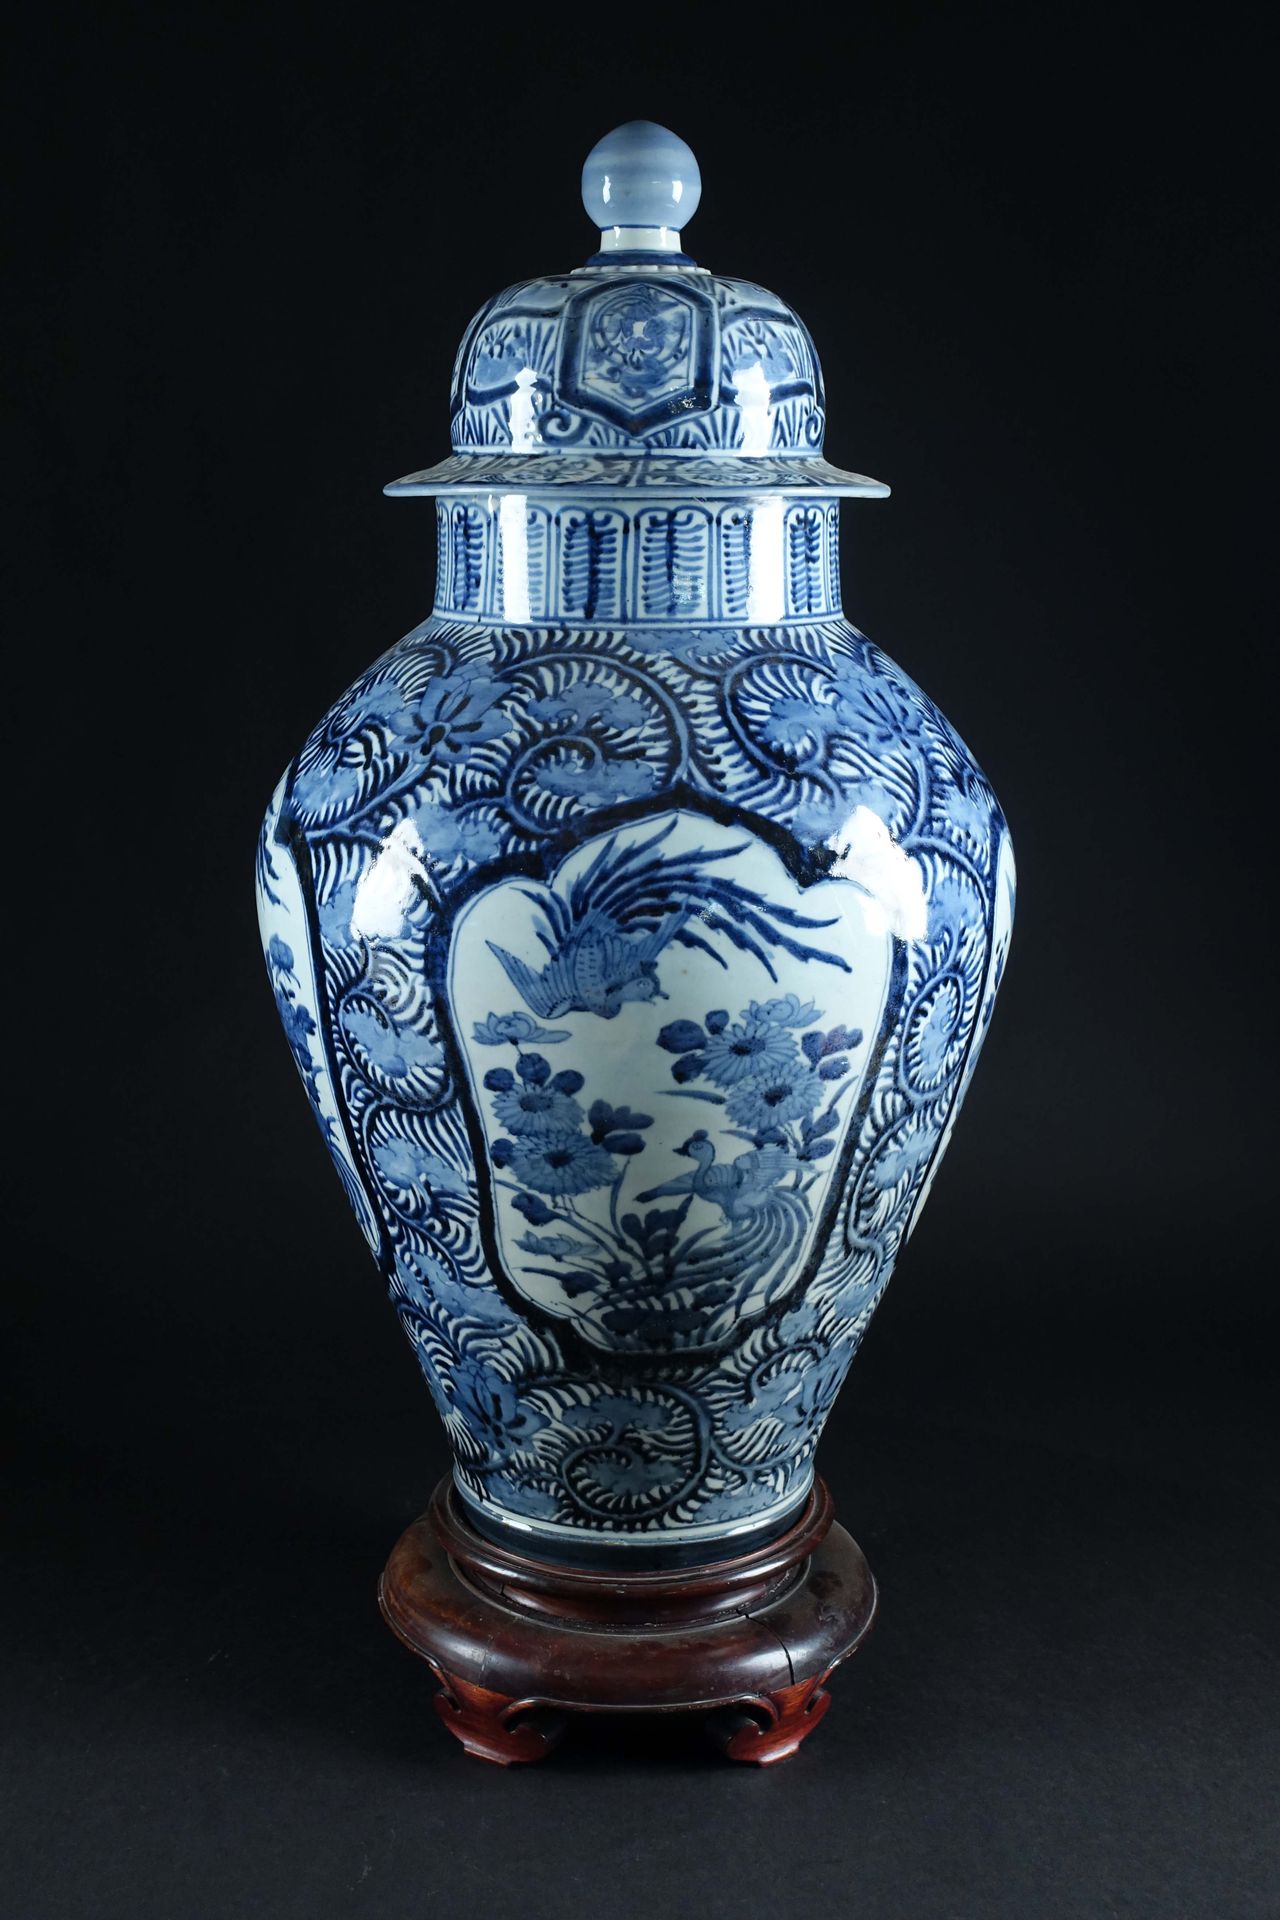 Arita. 一个非常大的有盖花瓶，上面有小鸟在花丛中飞翔的图案，从一个装饰着叶子的背景中脱颖而出。蓝/白珐琅彩瓷器。日本。江户时期。17世纪。高度：77厘米。&hellip;